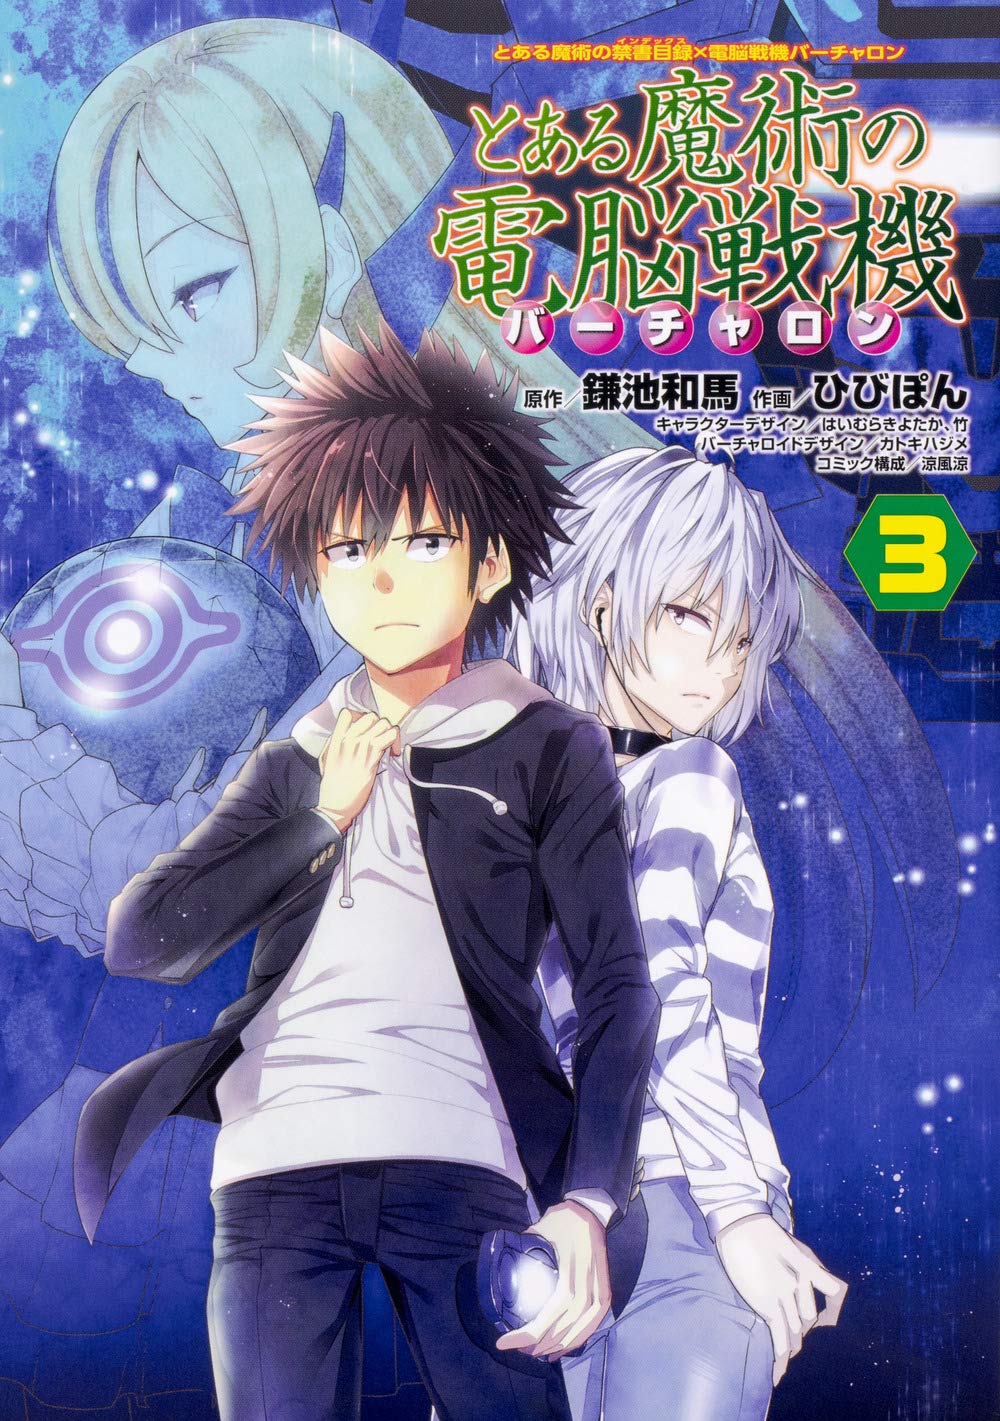 Toaru Kagaku no Accelerator Manga Volume 07, Toaru Majutsu no Index Wiki